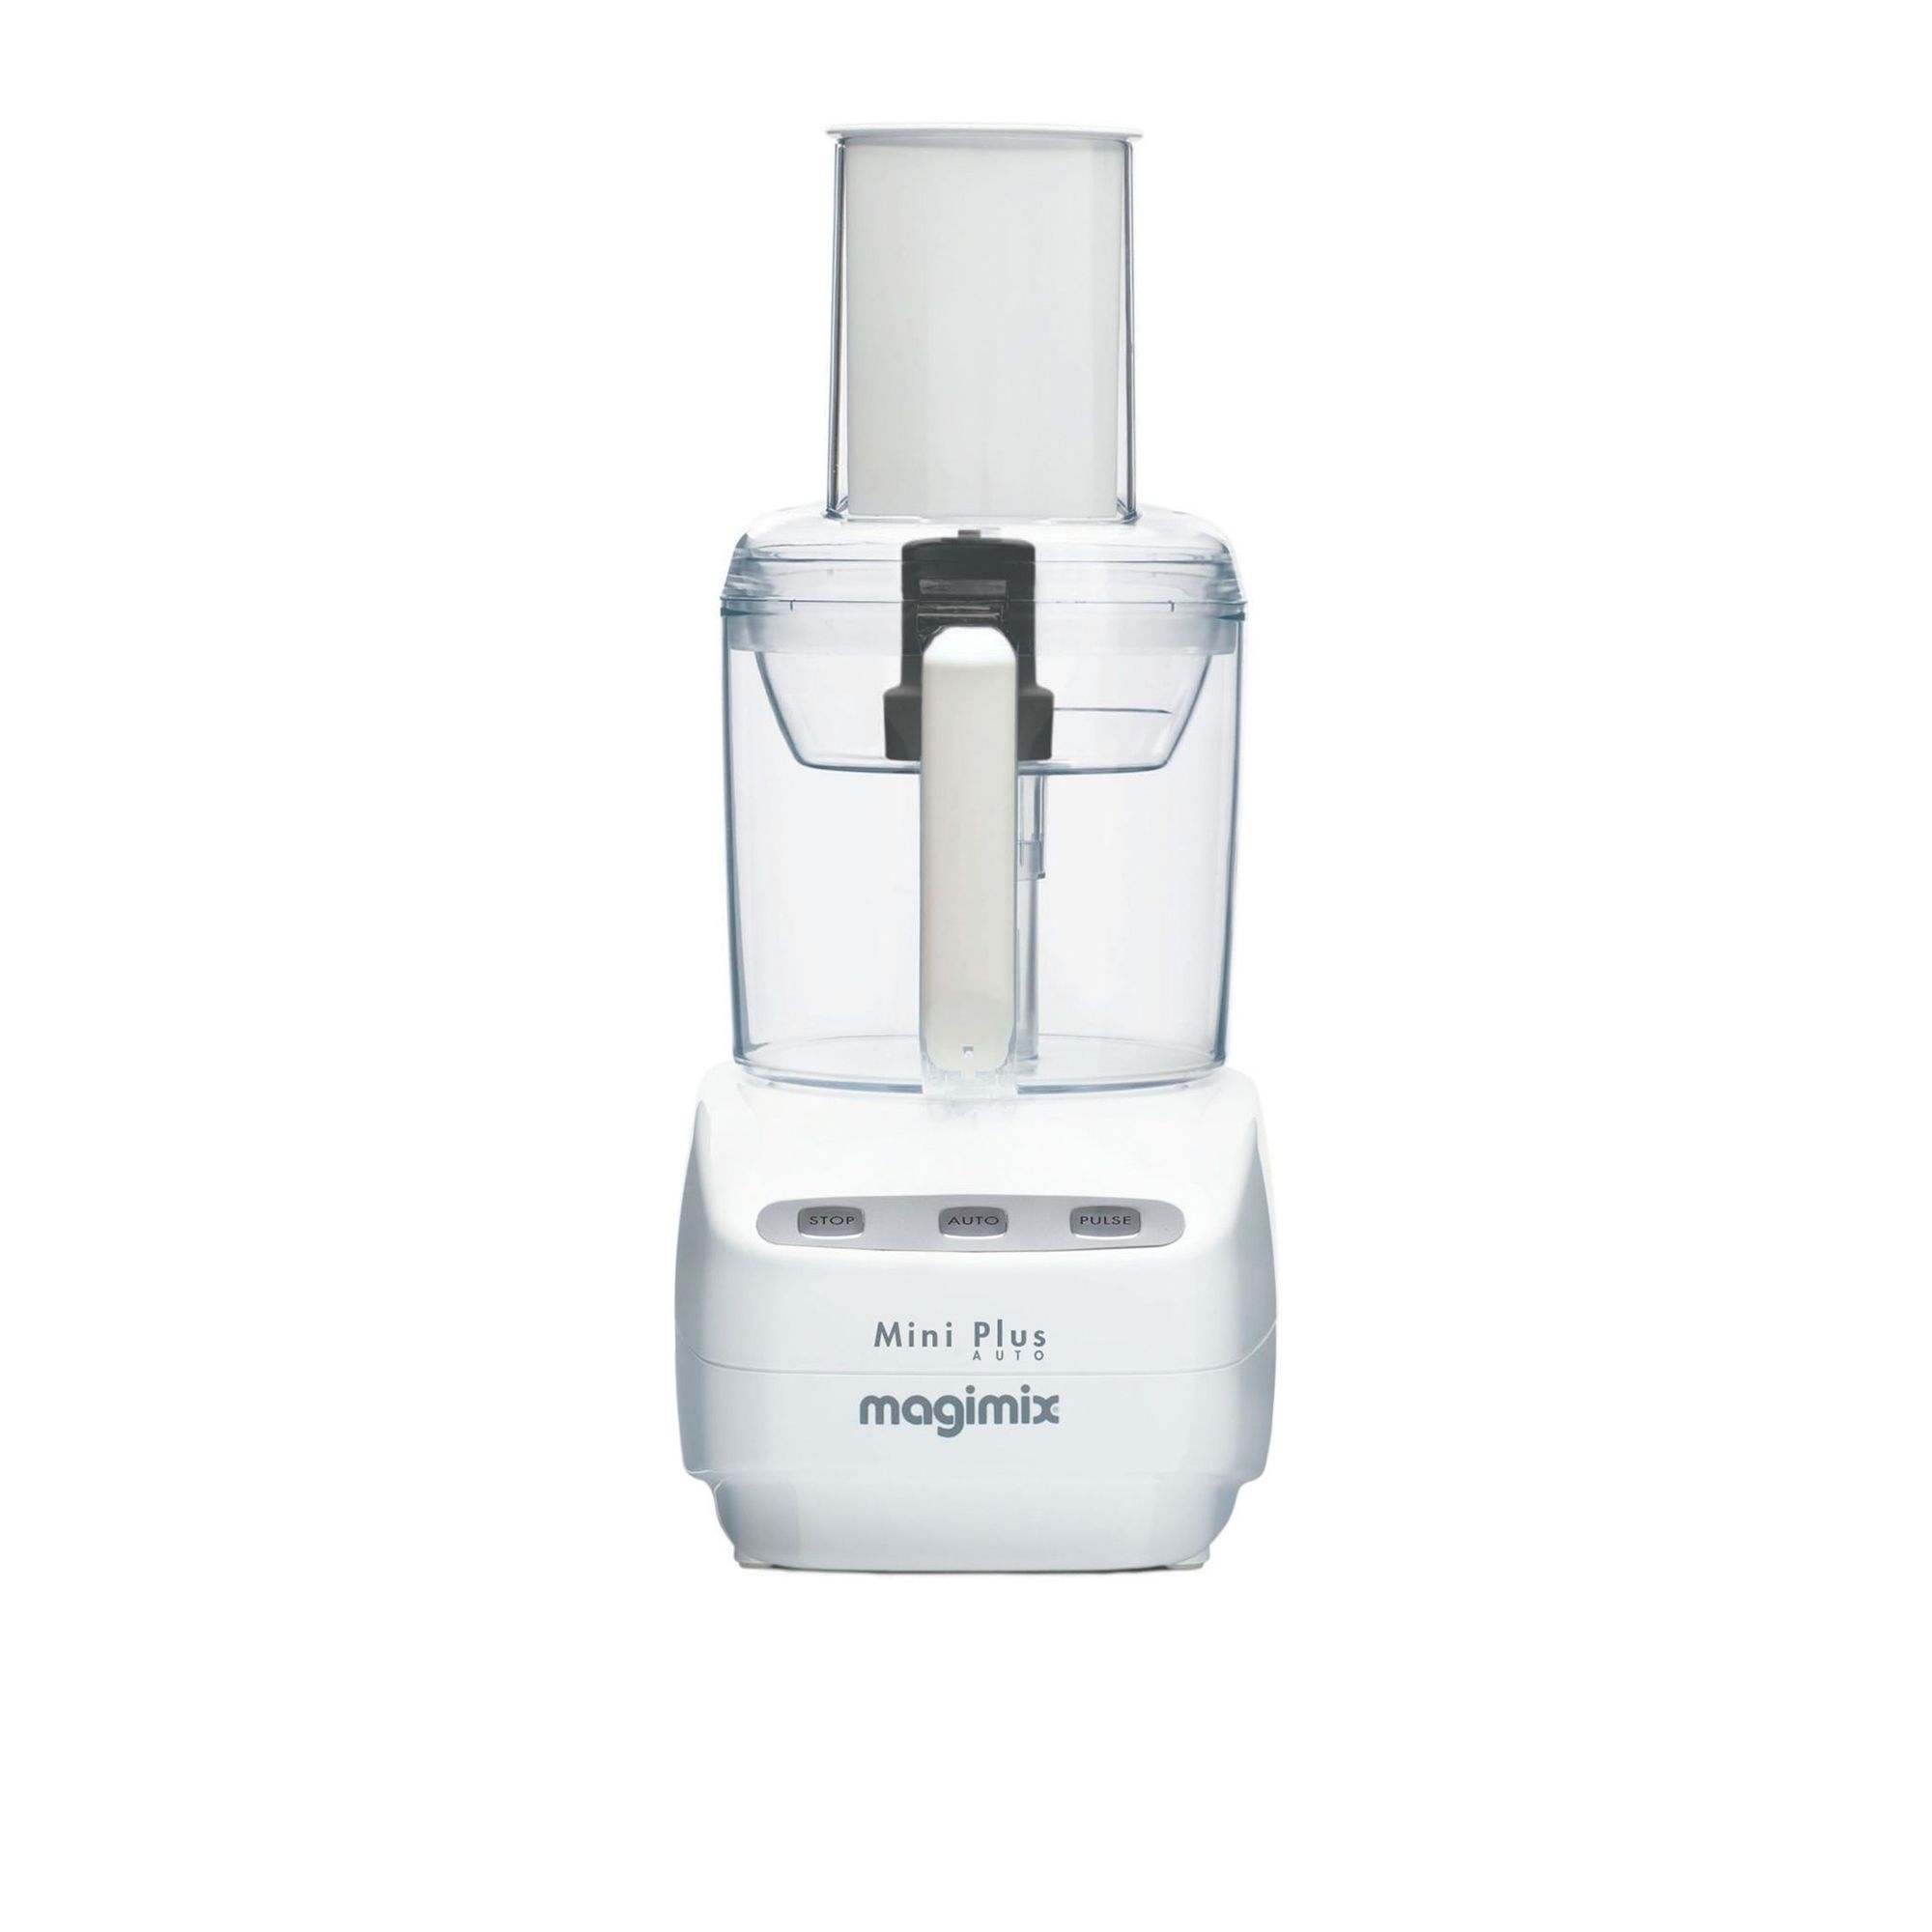 Magimix Le Mini Plus Food Processor White Image 1